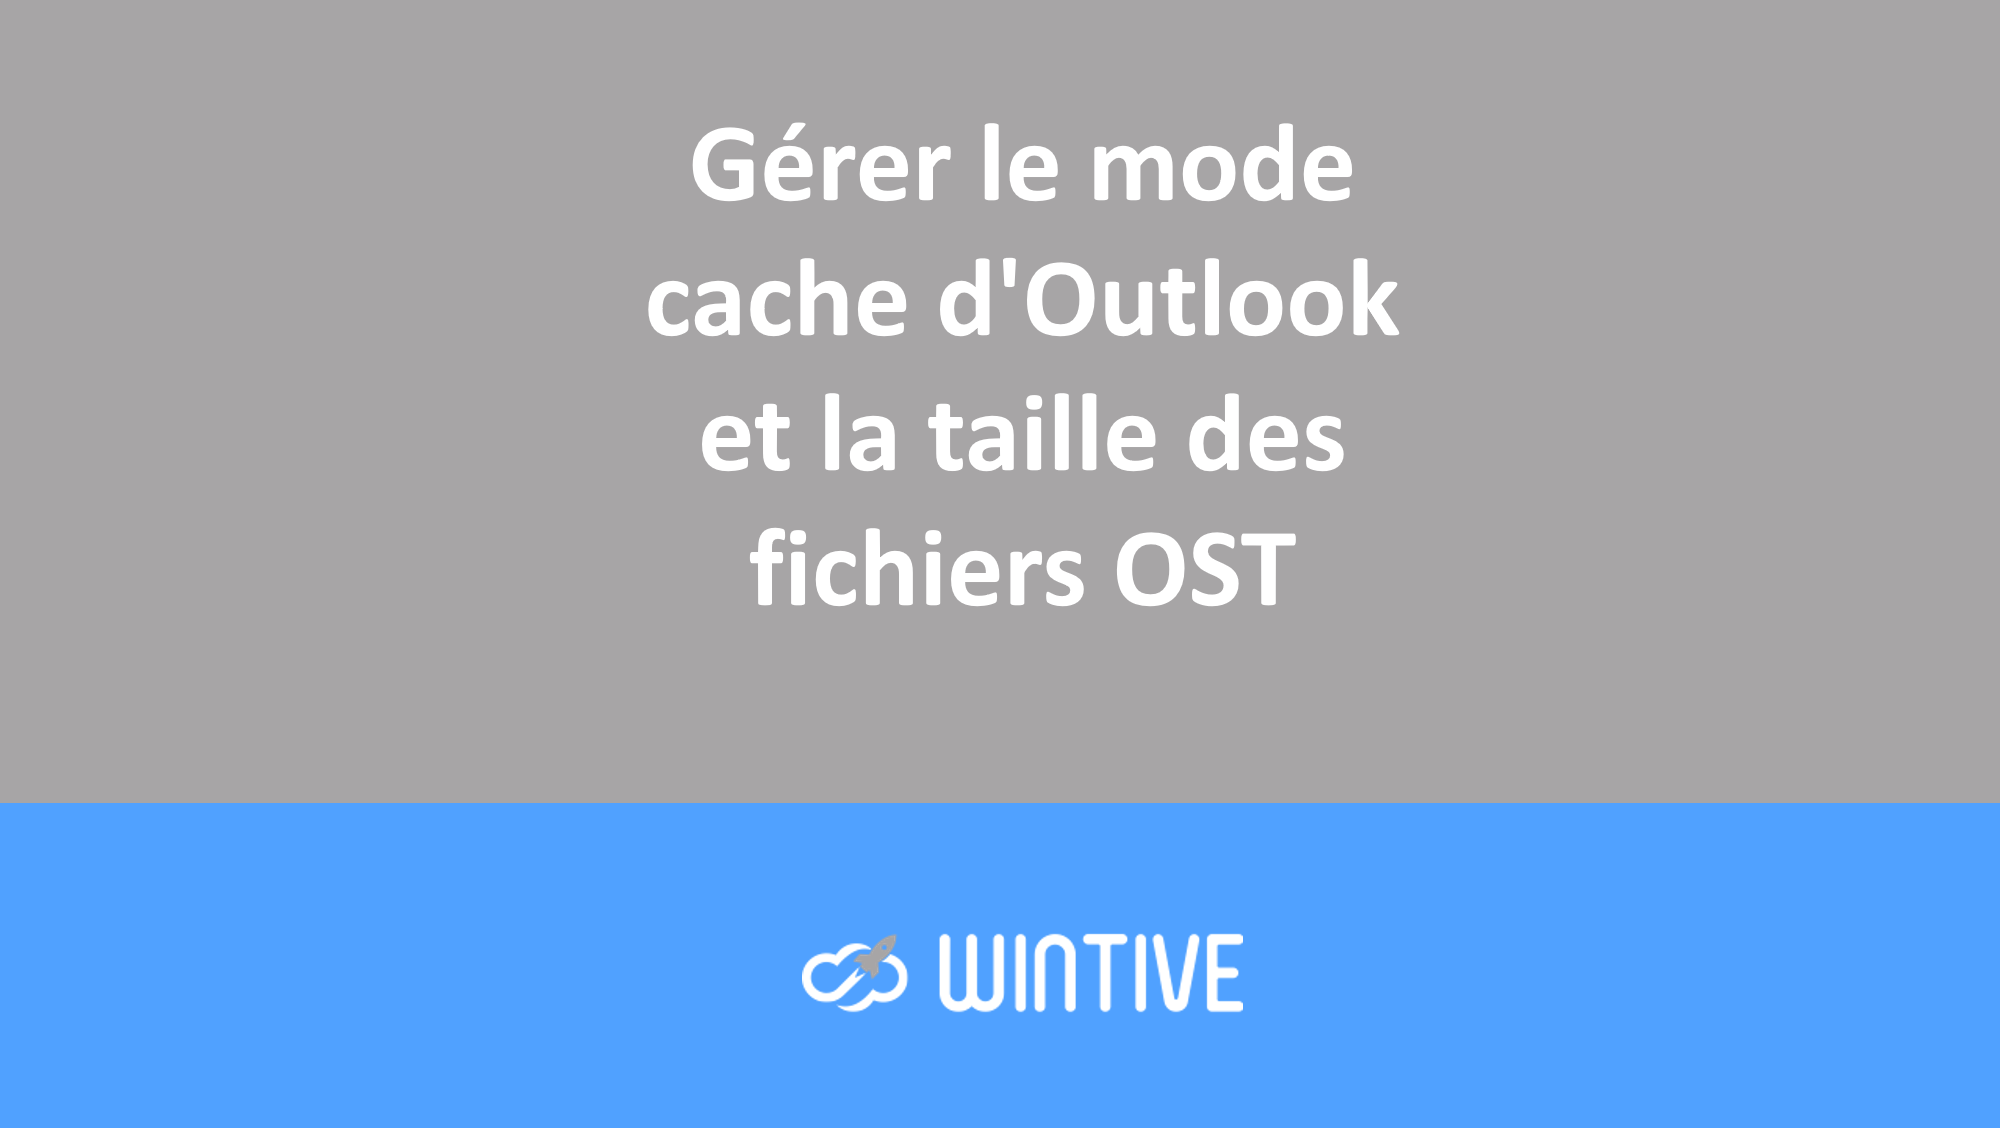 Gérer le mode cache d’Outlook et la taille des fichiers OST